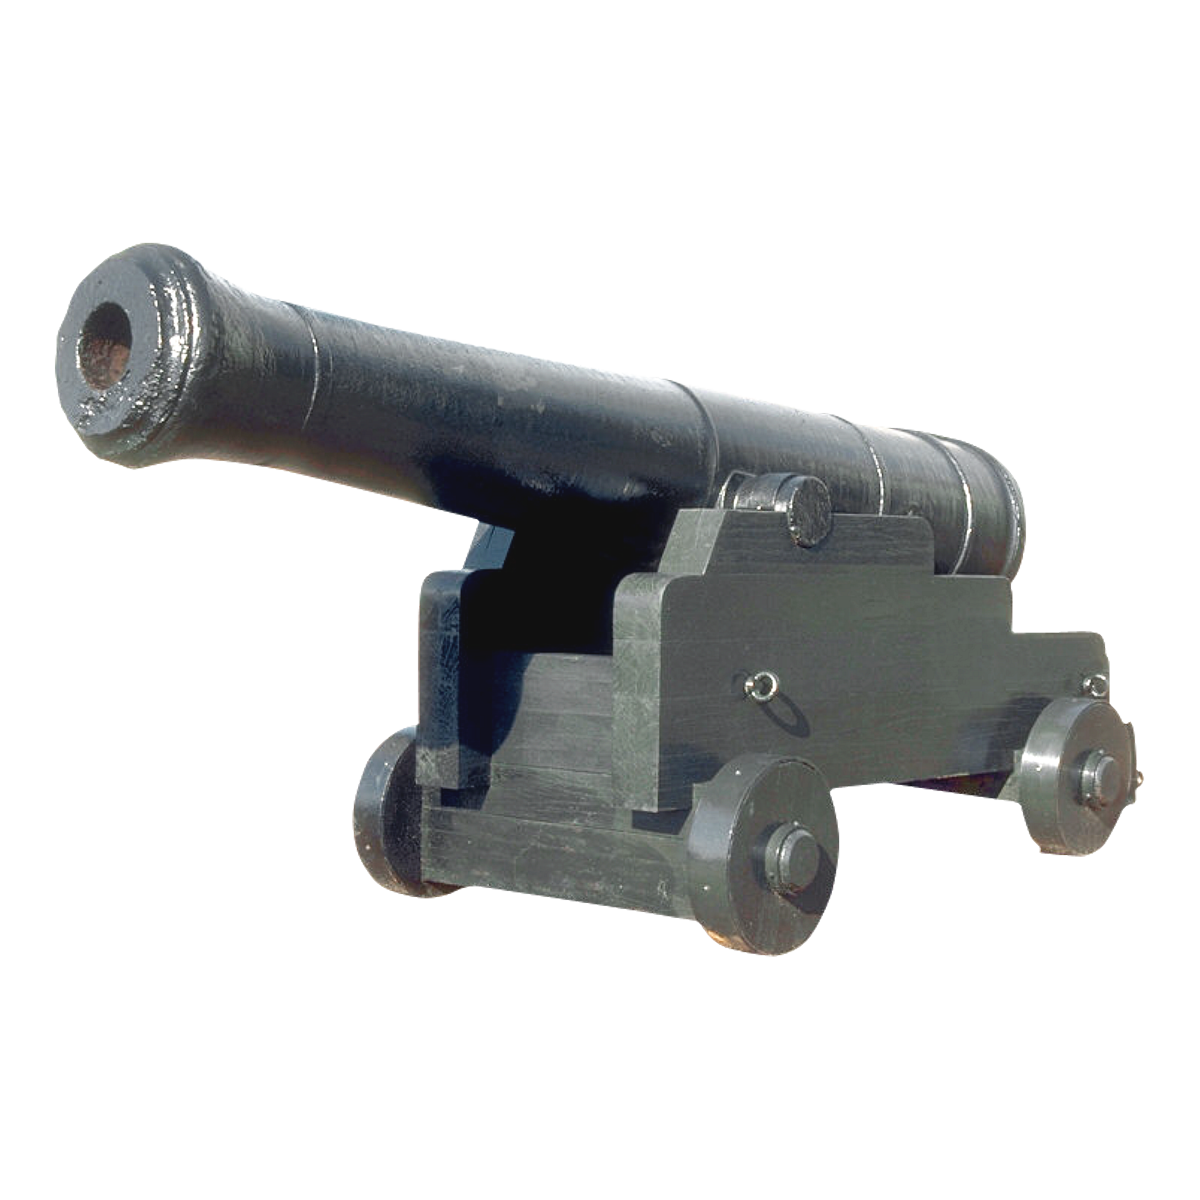 Cannon Transparent Image